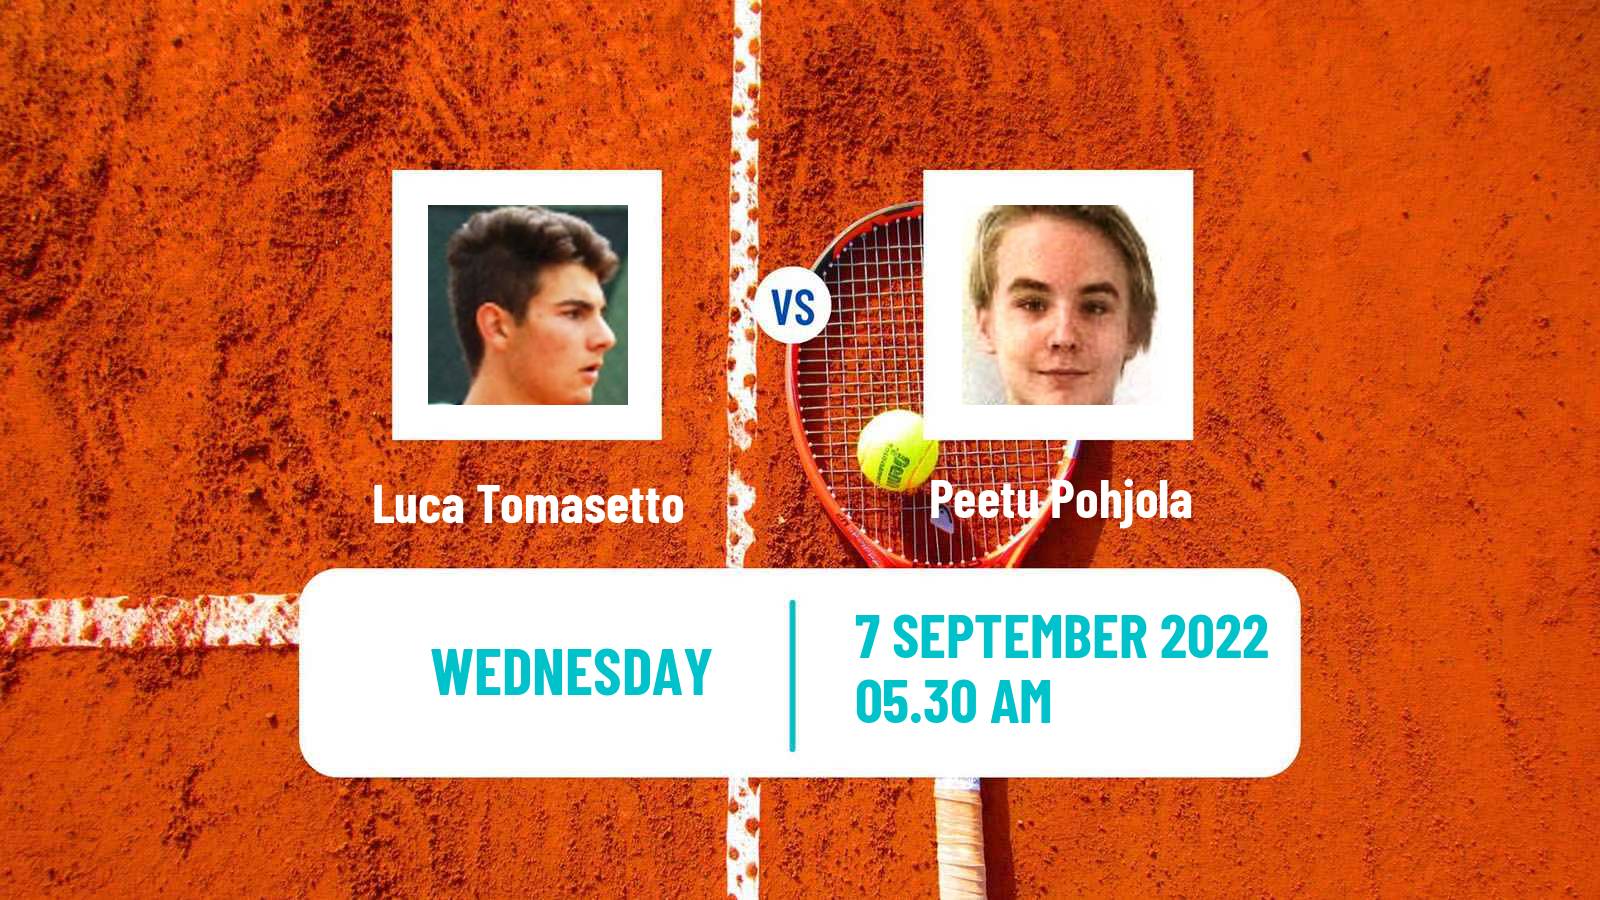 Tennis ITF Tournaments Luca Tomasetto - Peetu Pohjola